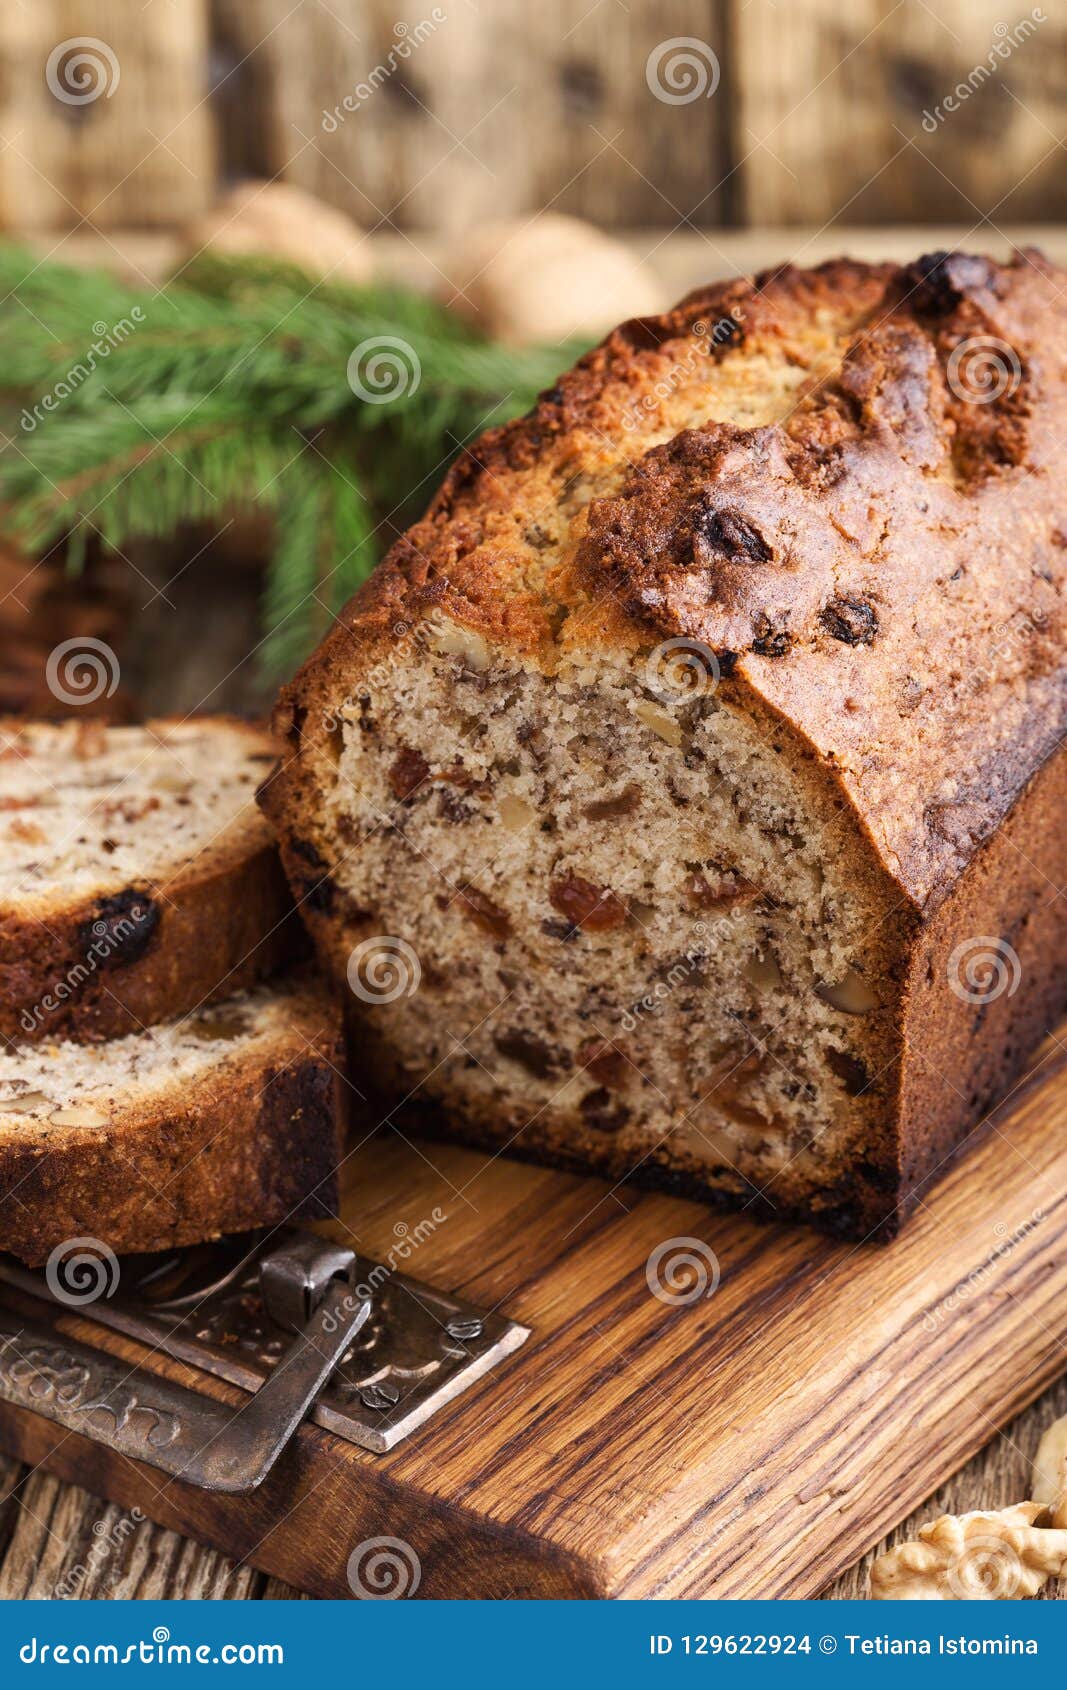 Christmas Loaf Cake - Holiday Swirl Loaf Cake | Recipe | Loaf cake, Holiday ...